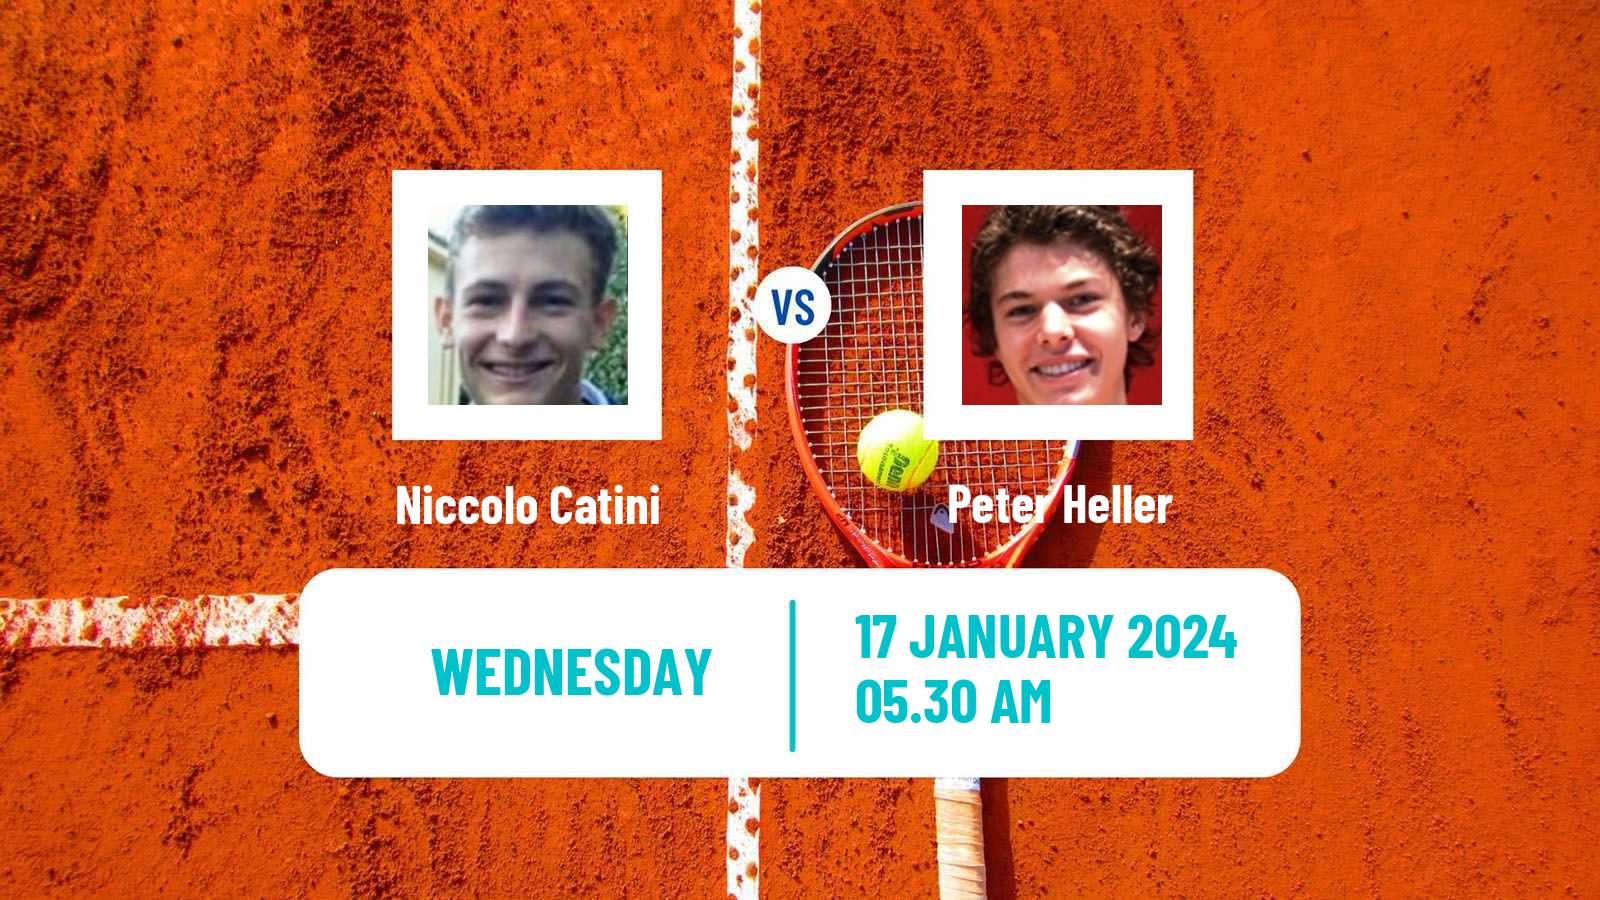 Tennis ITF M15 Antalya 2 Men Niccolo Catini - Peter Heller